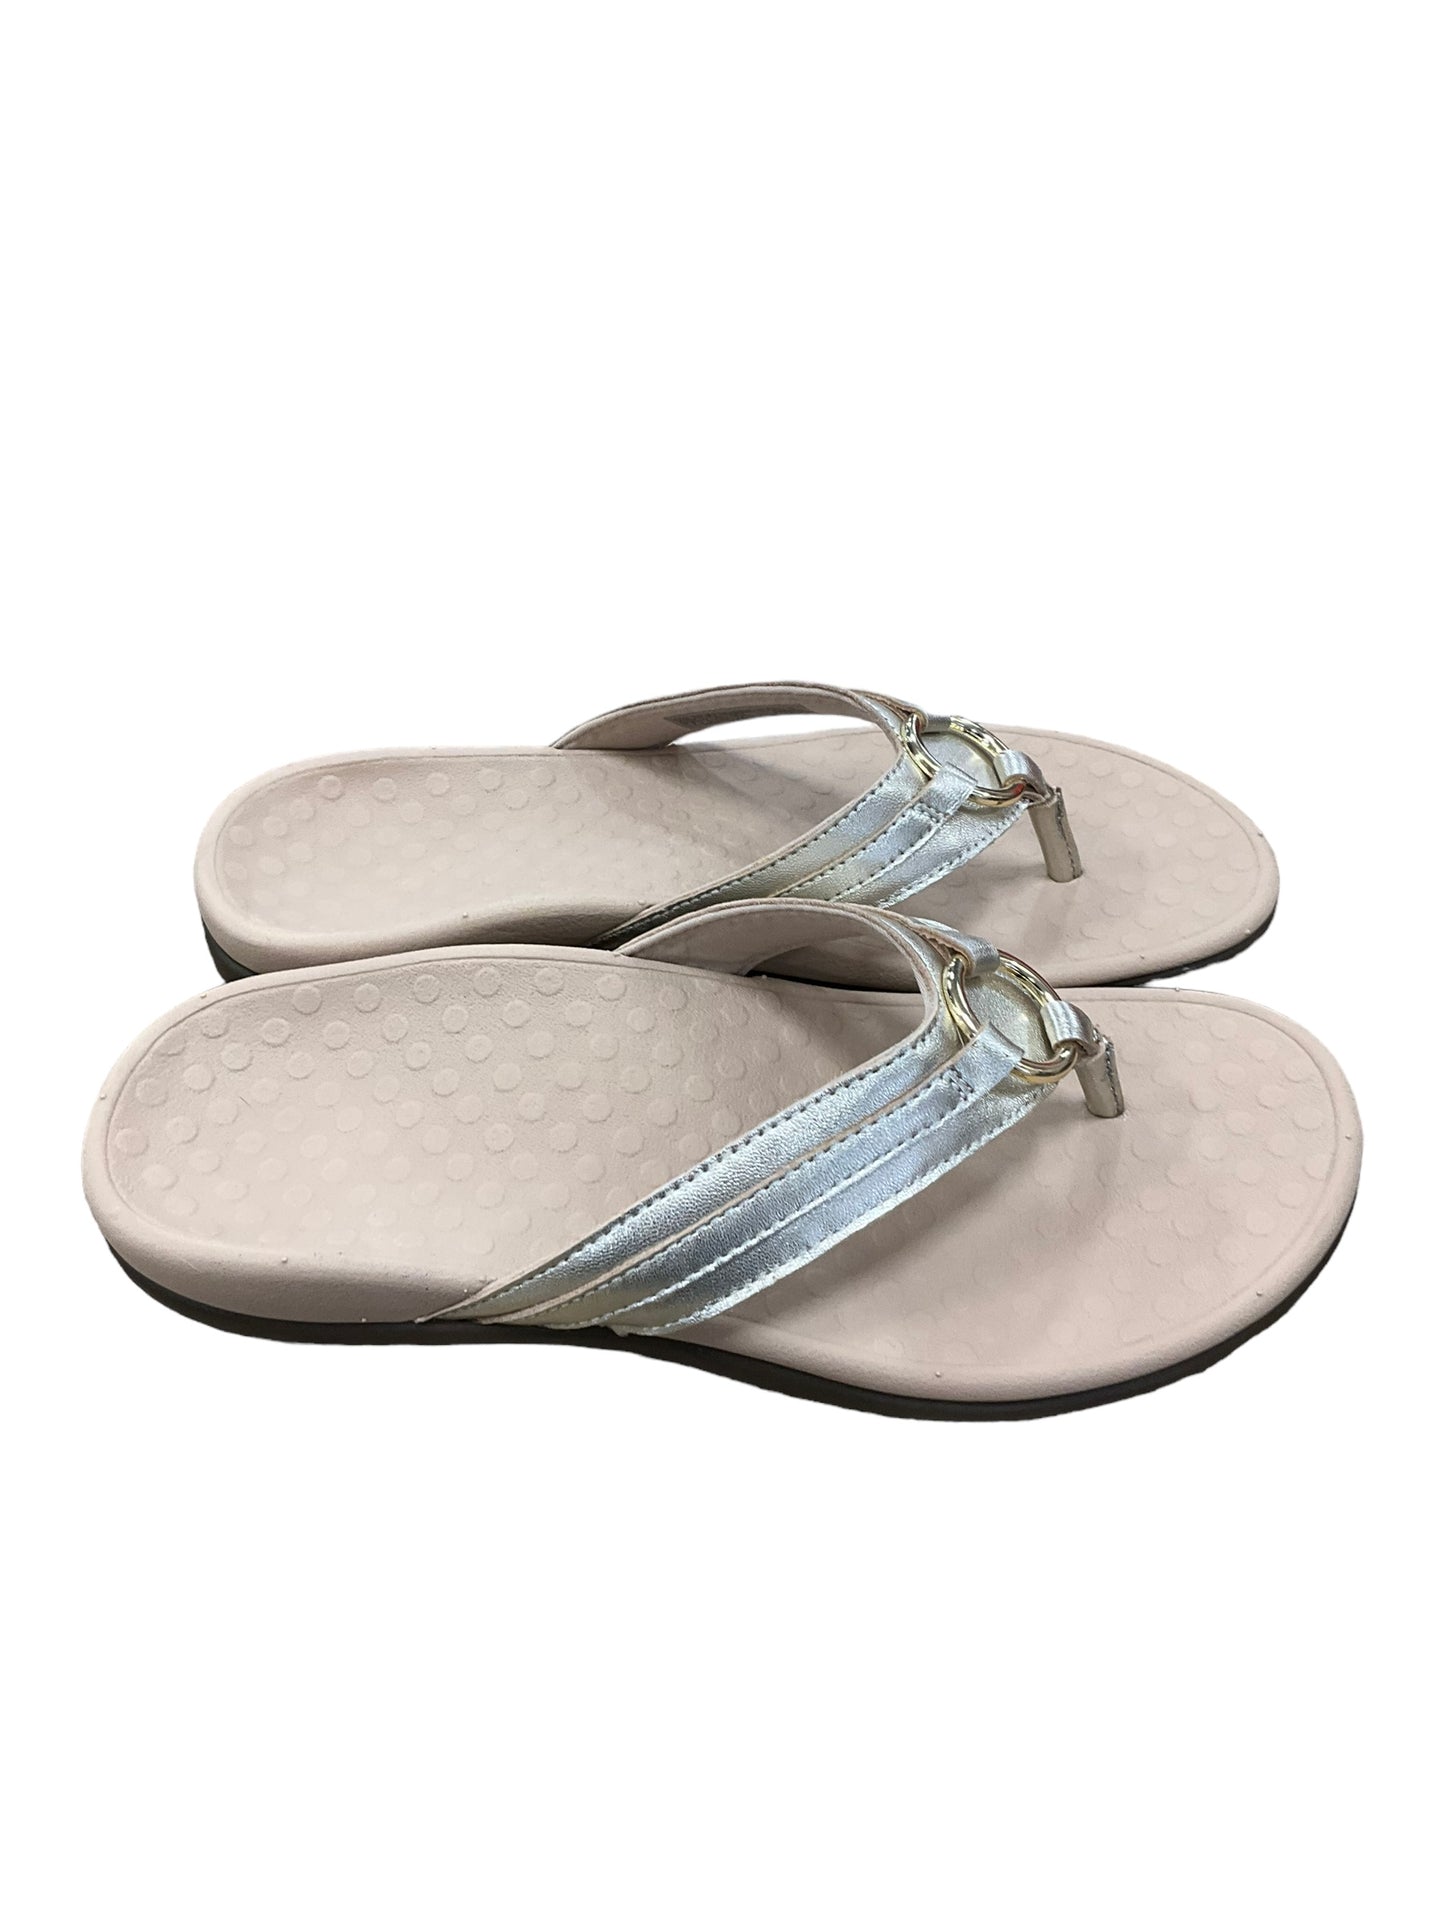 Sandals Flip Flops By Vionic  Size: 7